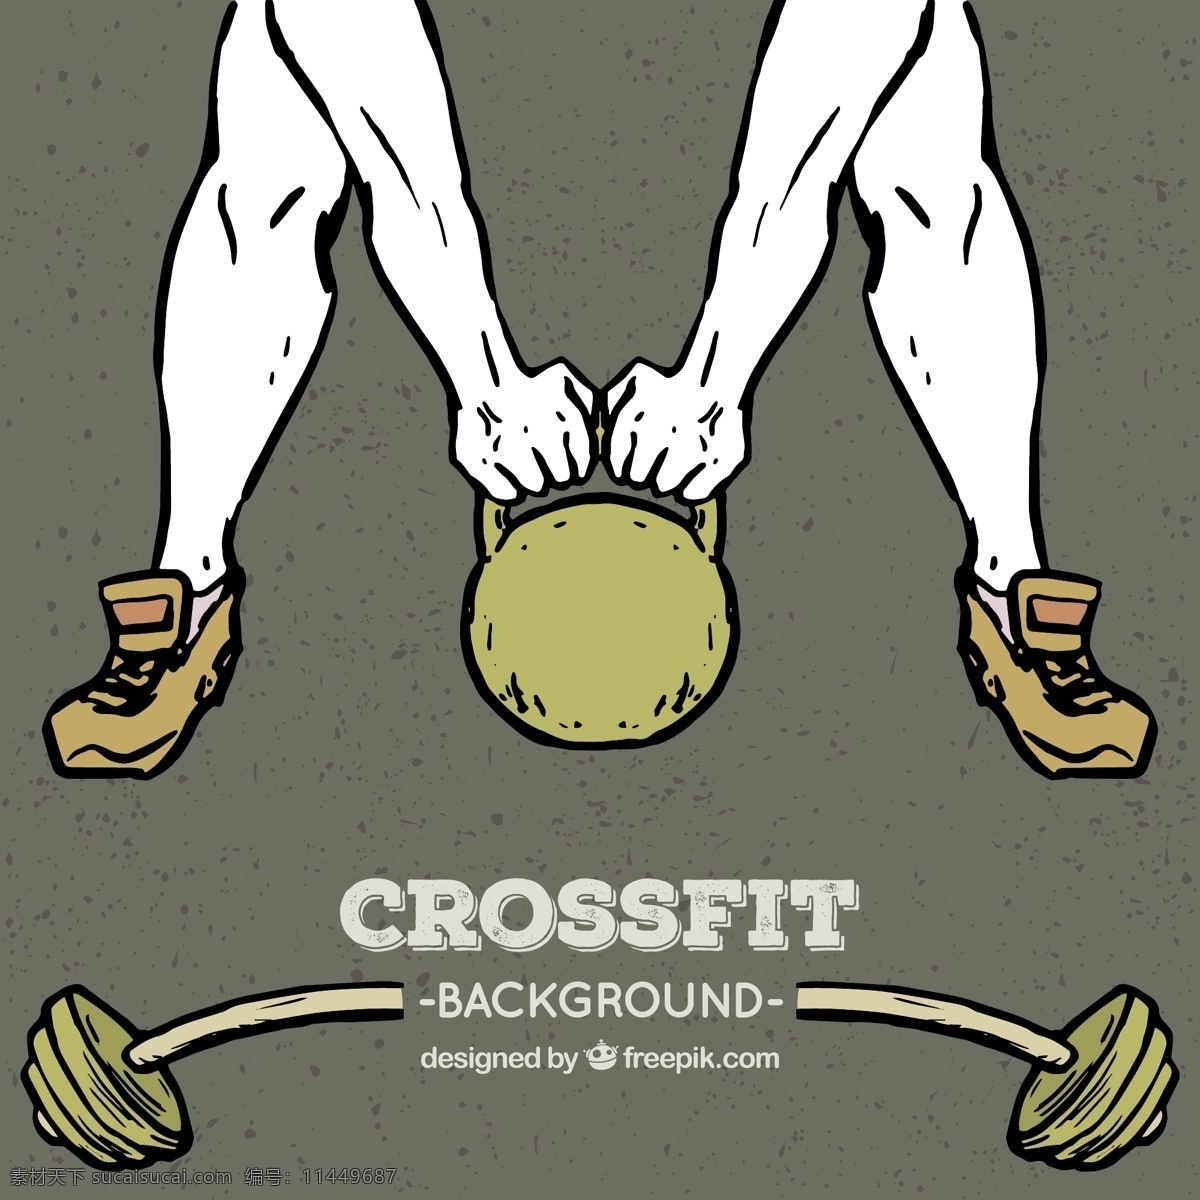 起重量 crossfit 背景 运动 健身 健康 墙纸 训练 肌肉 体重 锻炼 运动员 哑铃 设备 举重 阻力 适应